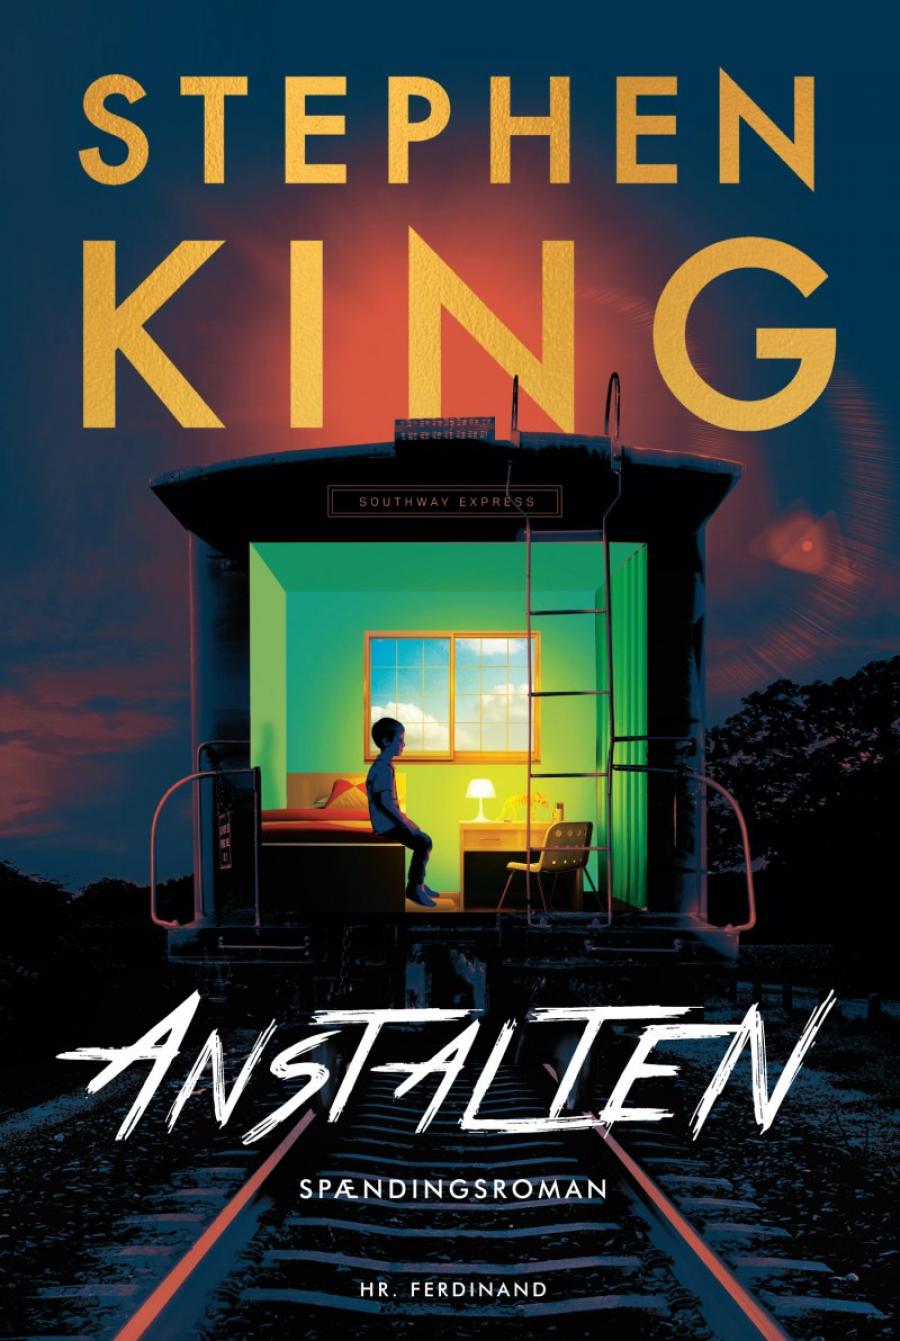 Forsidebillede af bogen Anstalten af Stephen King